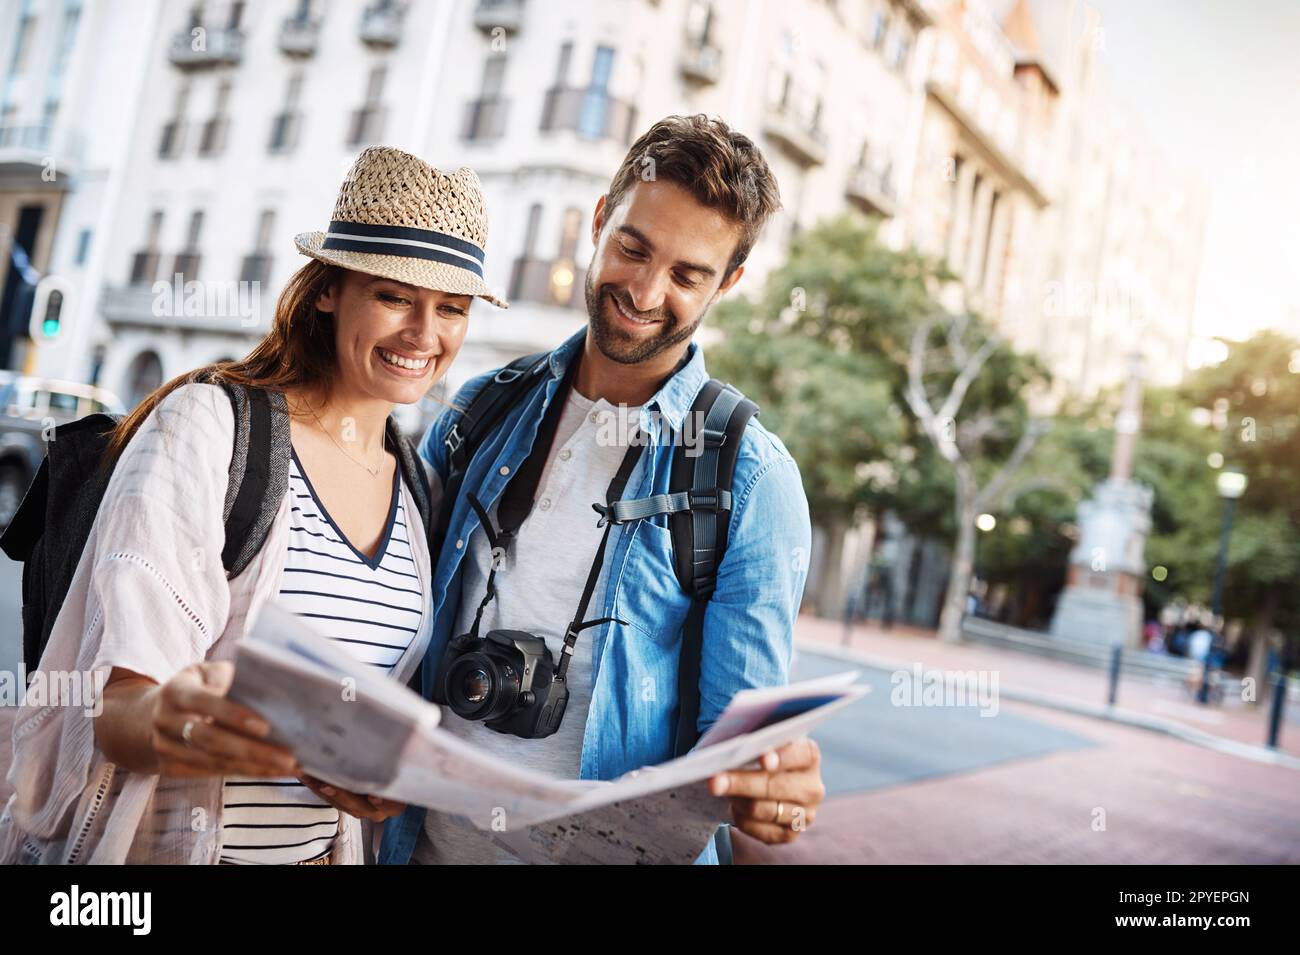 Regardons ici... un jeune couple affectueux qui utilise une carte tout en explorant une ville étrangère. Banque D'Images